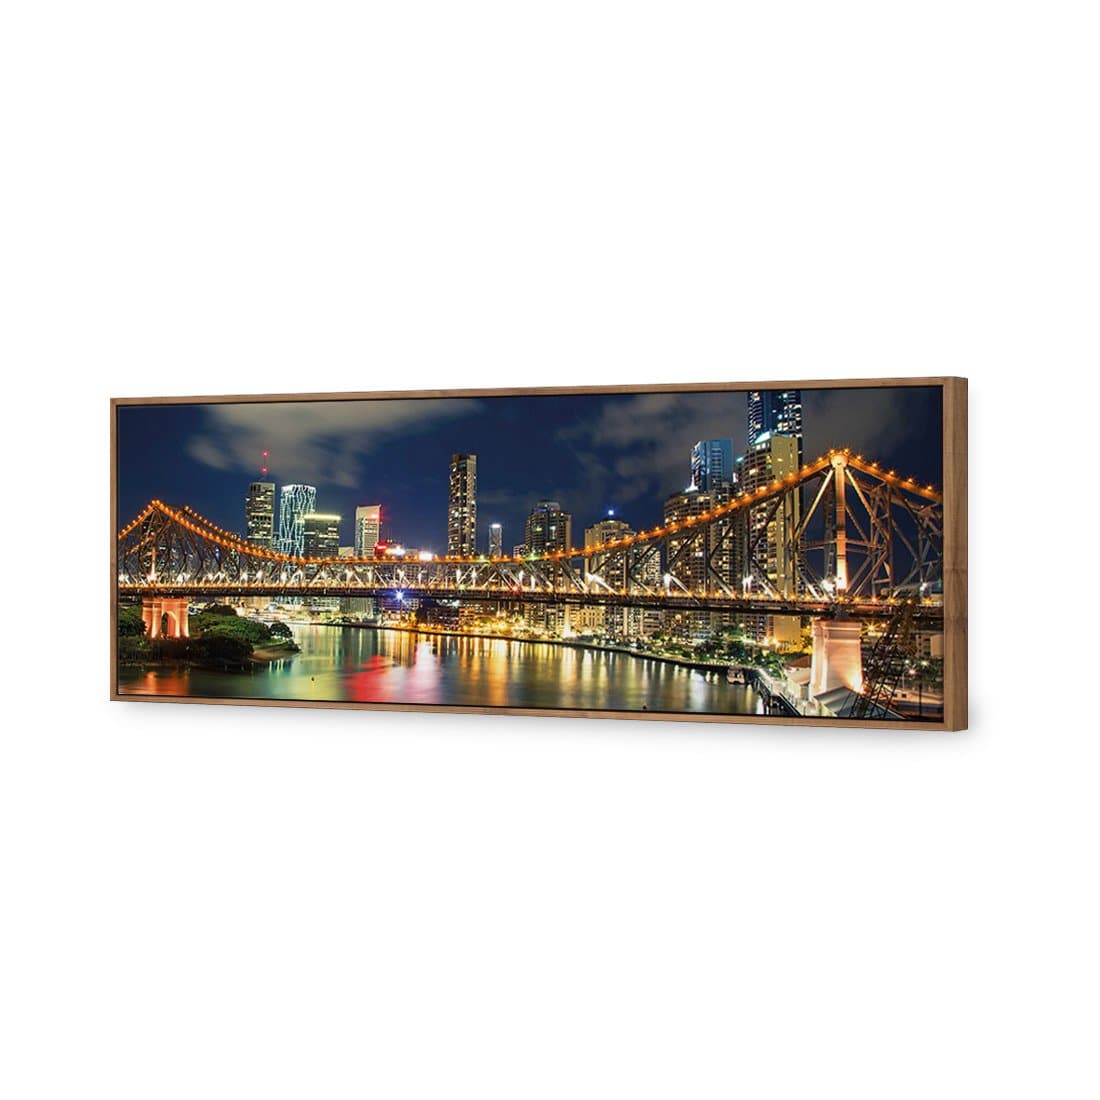 Story Bridge 2015 Canvas Art-Canvas-Wall Art Designs-60x20cm-Canvas - Natural Frame-Wall Art Designs